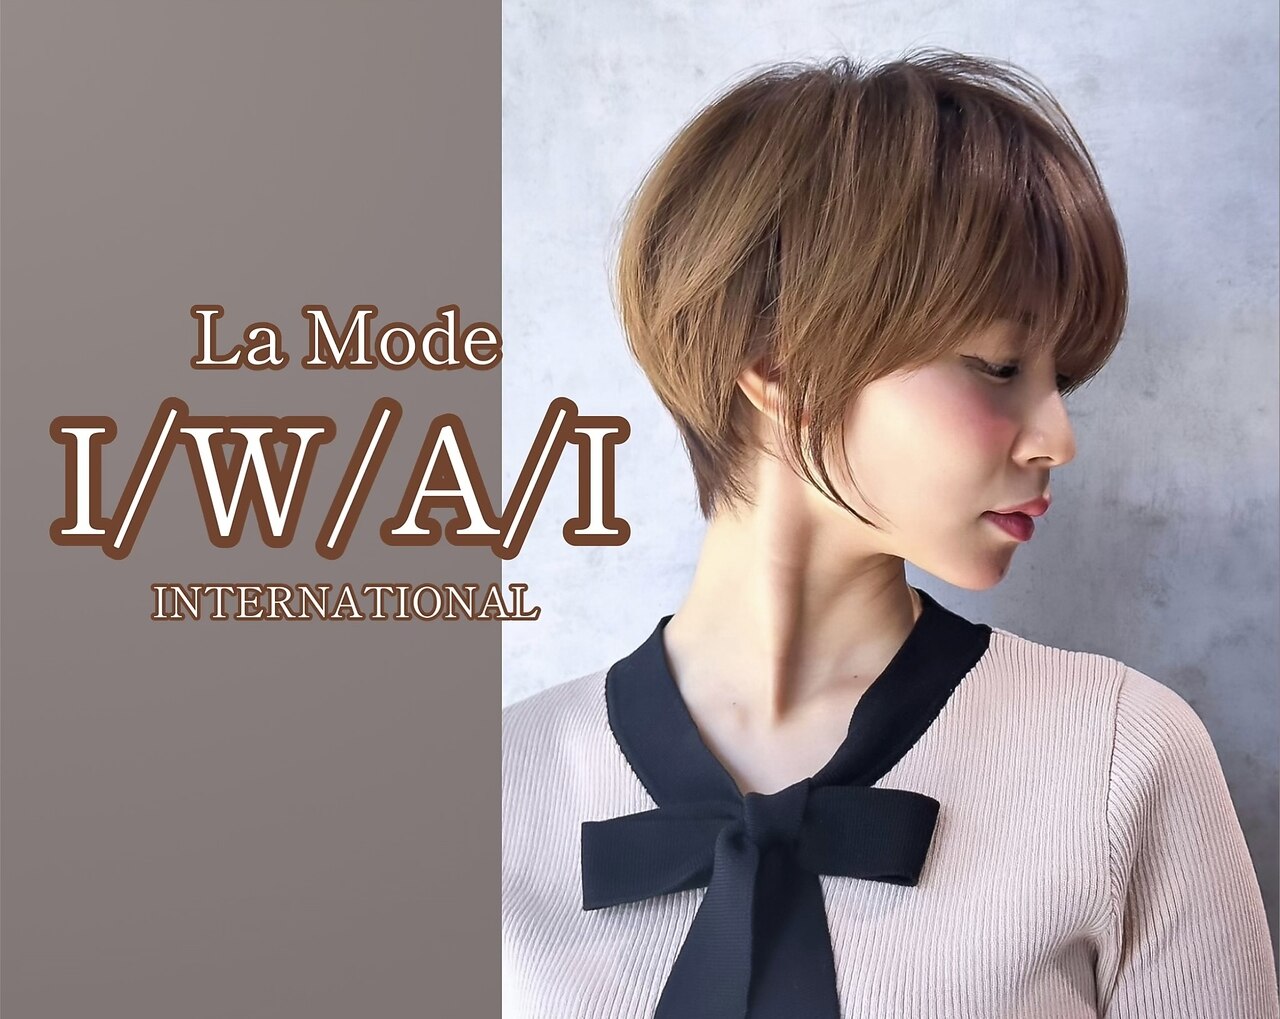 ラモードイワイインターナショナル(La Mode IWAI international